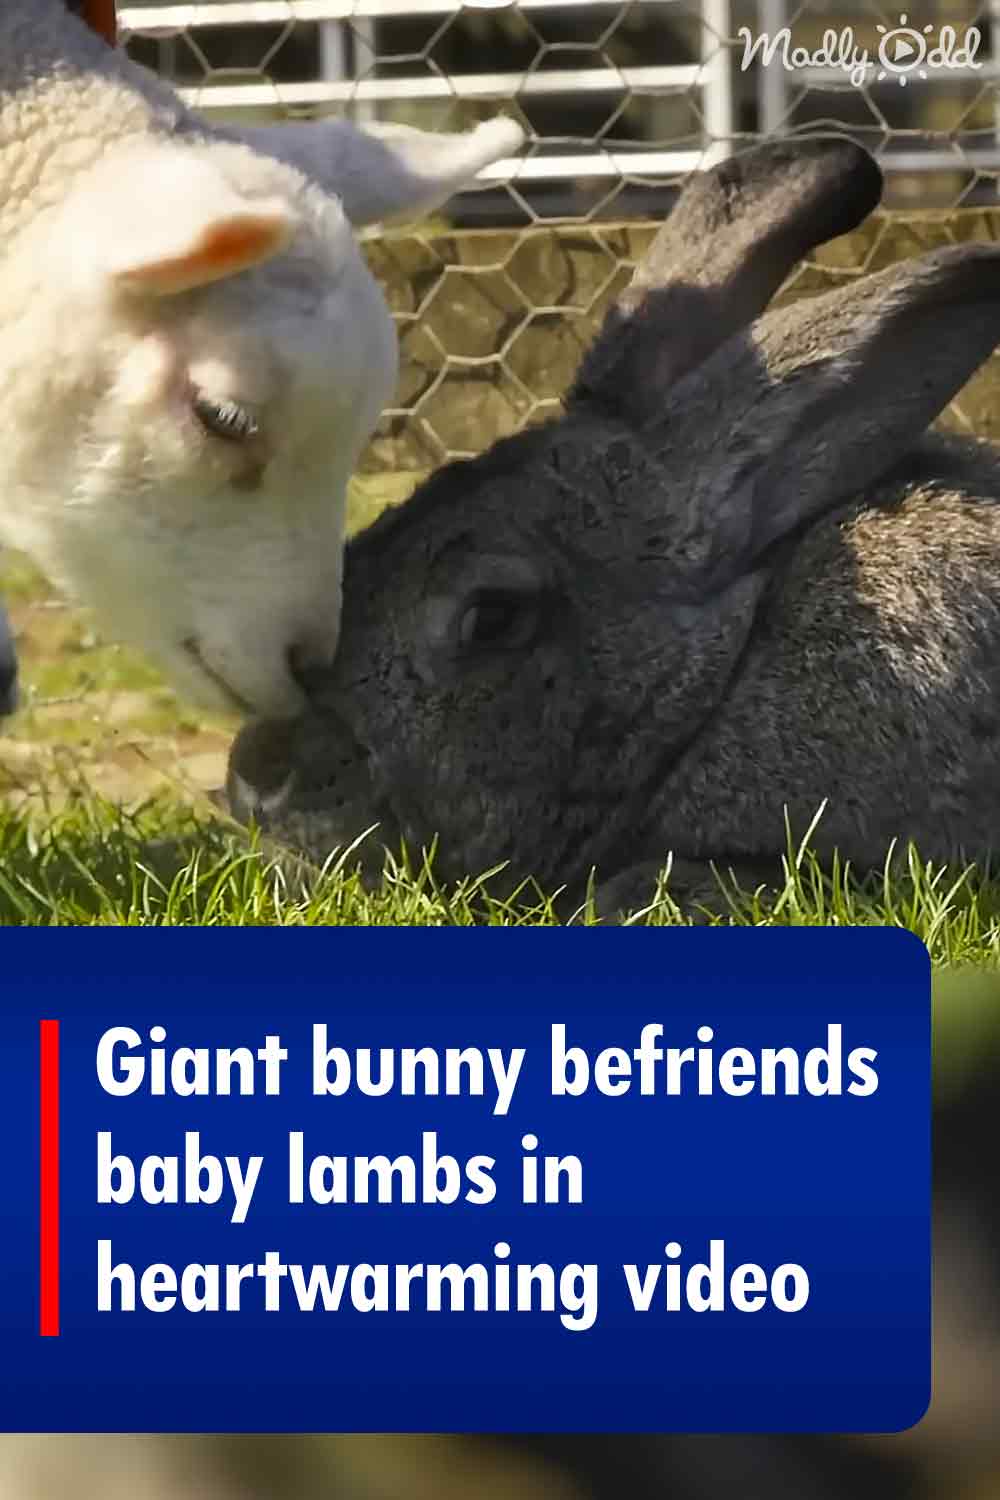 Giant bunny befriends baby lambs in heartwarming video